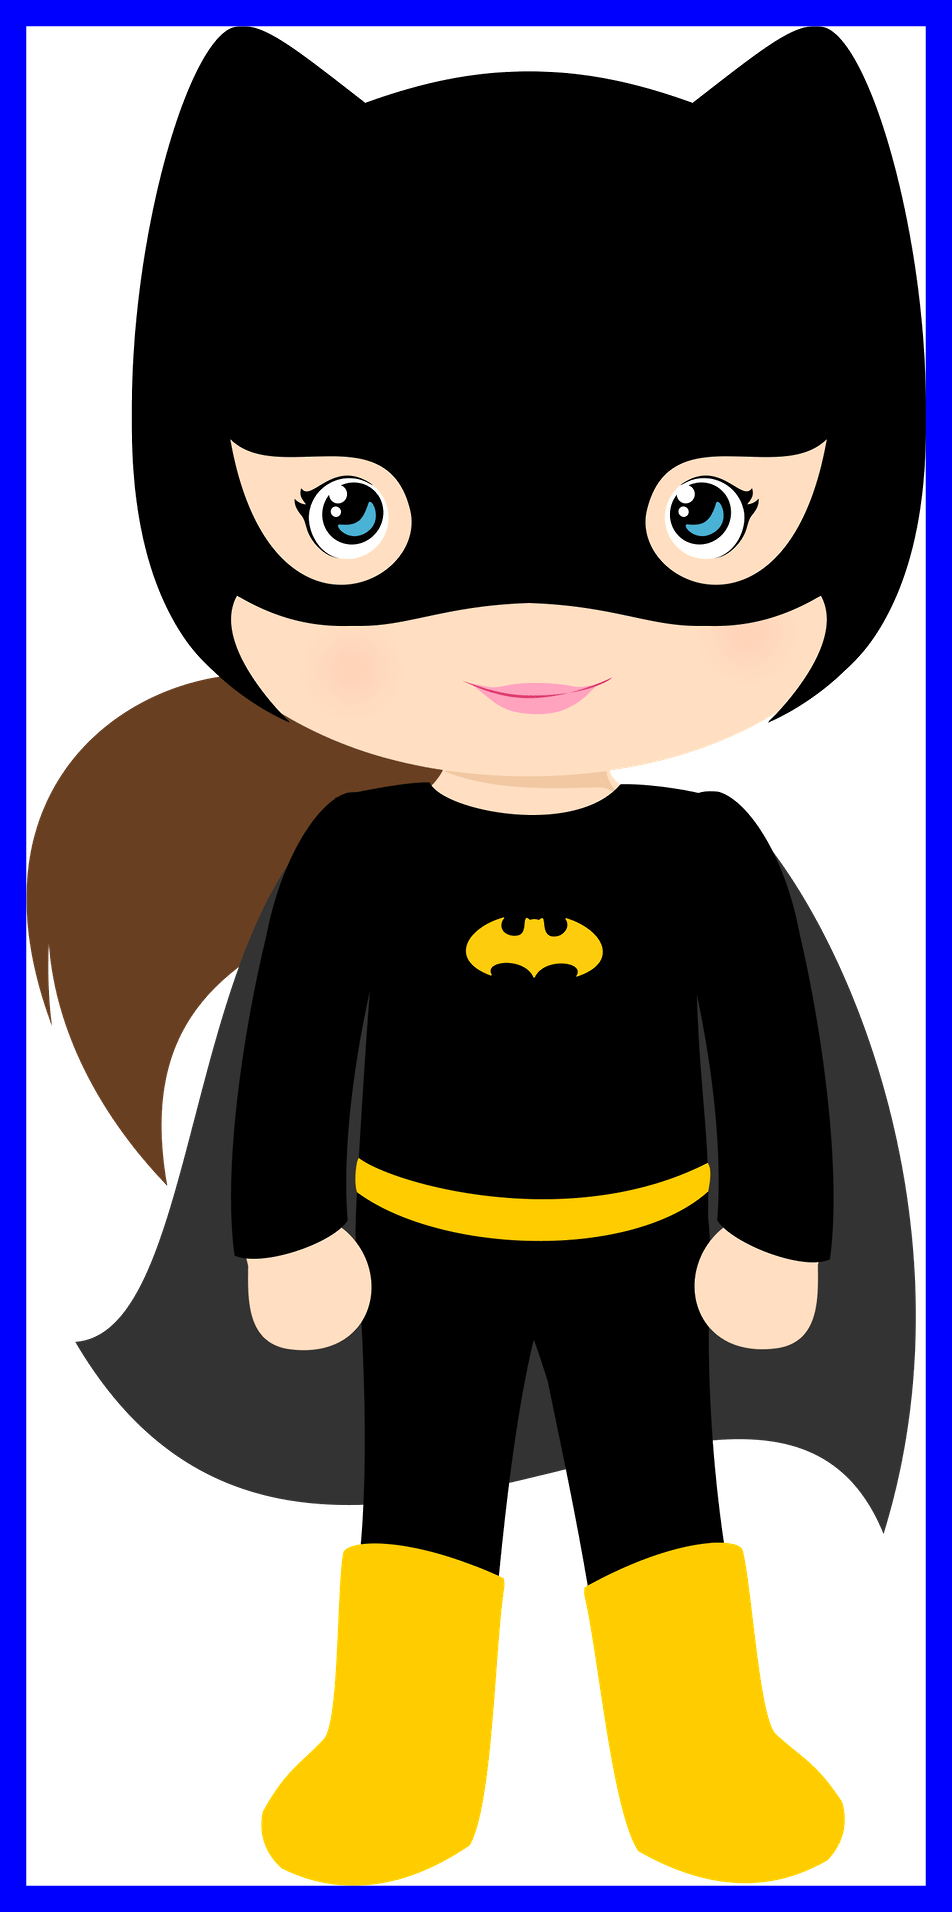 Batgirl logo PNG image Transparente image